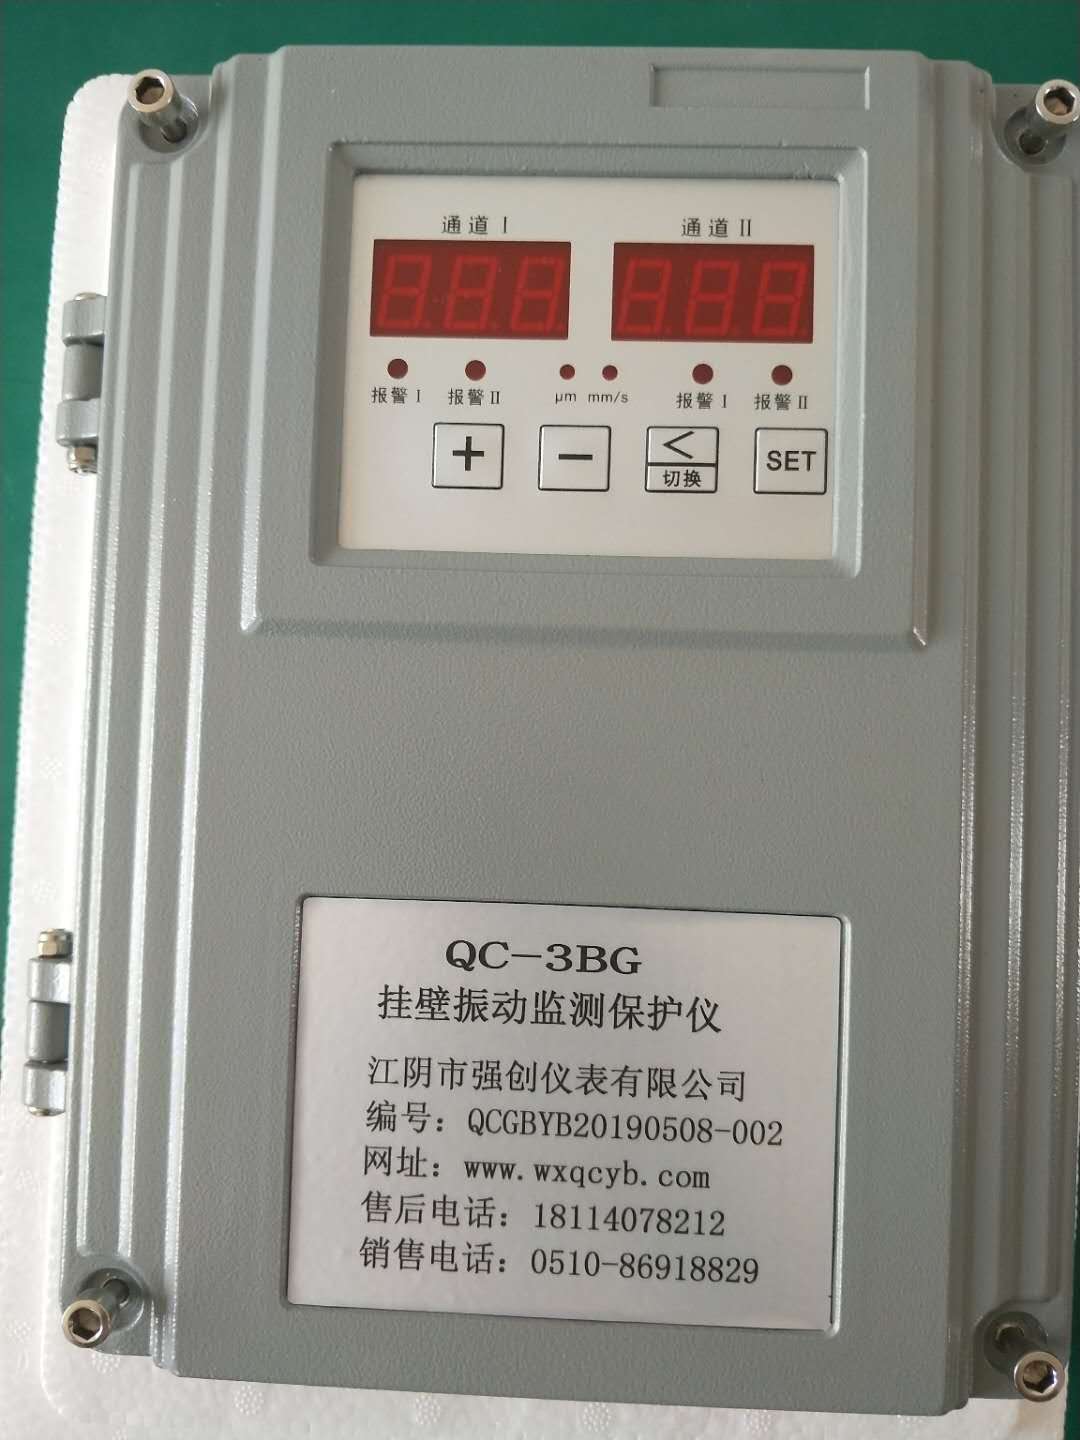 QC-3BG振动监控仪(挂壁式